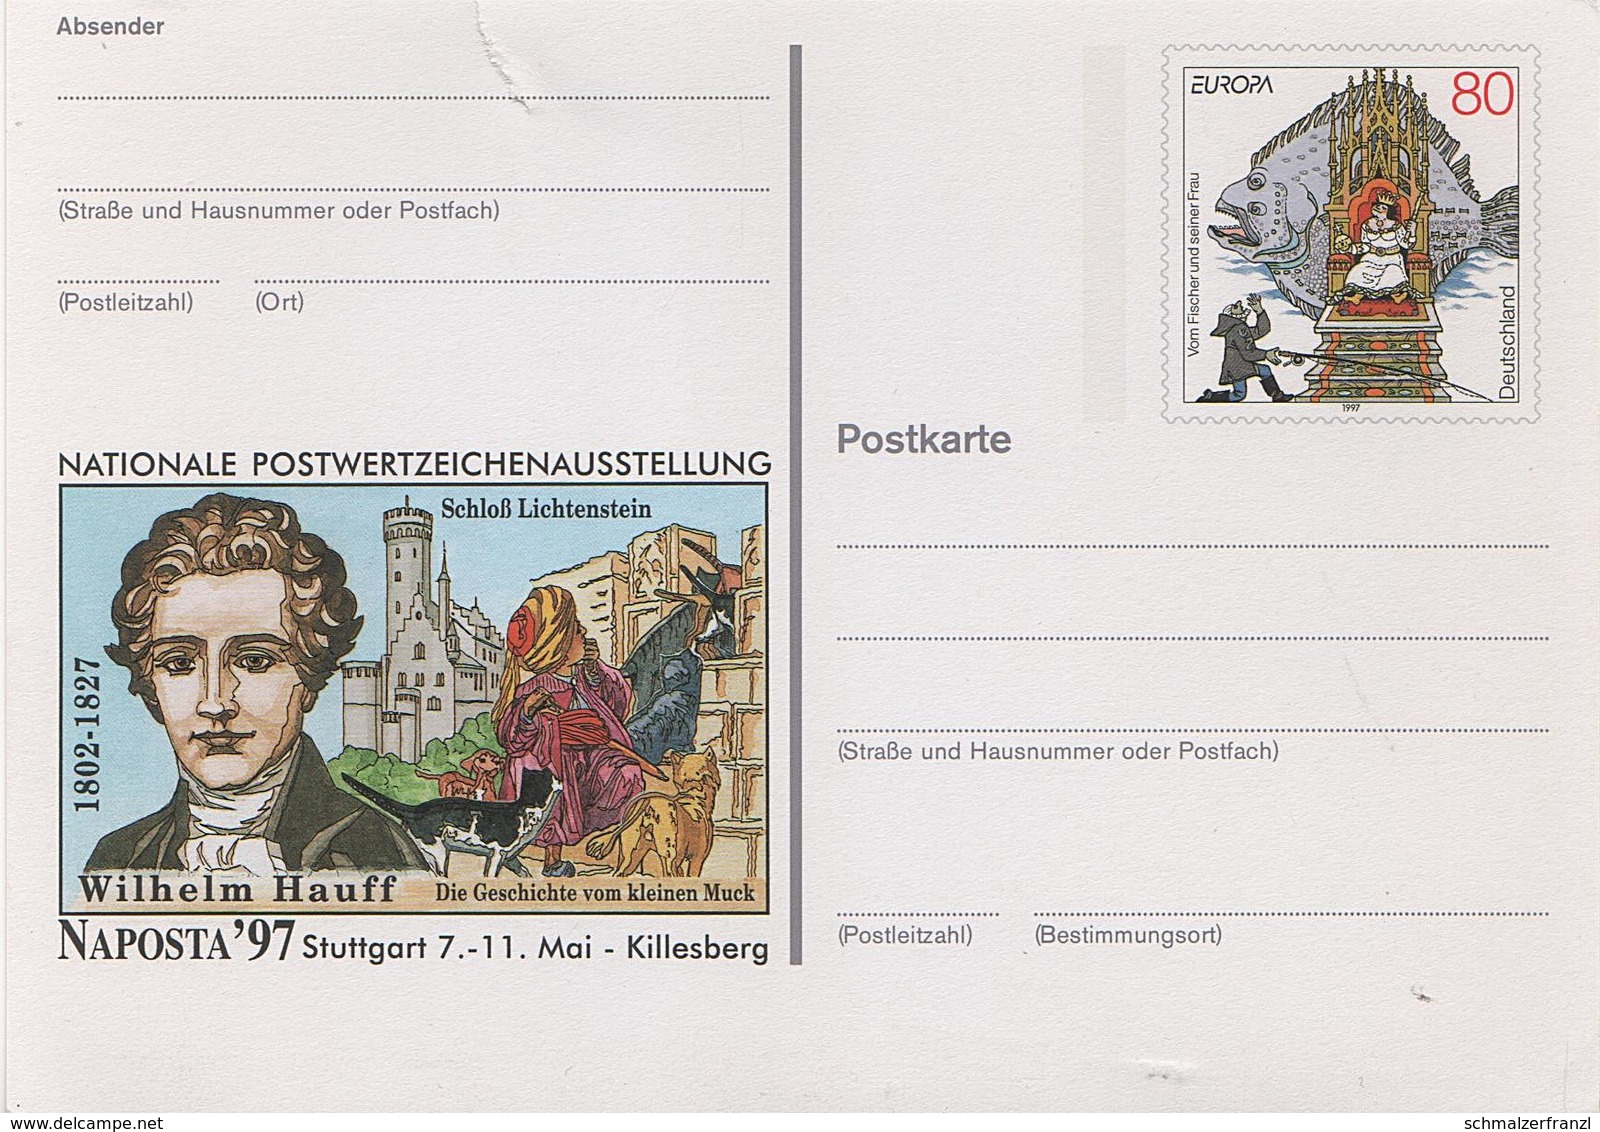 Postkarte Ganzsache Deutsche Bundespost Post Briefmarke 80 Pfennig DM Postwertzeichenausstellung Naposta Stuttgart 1997 - Postkarten - Ungebraucht